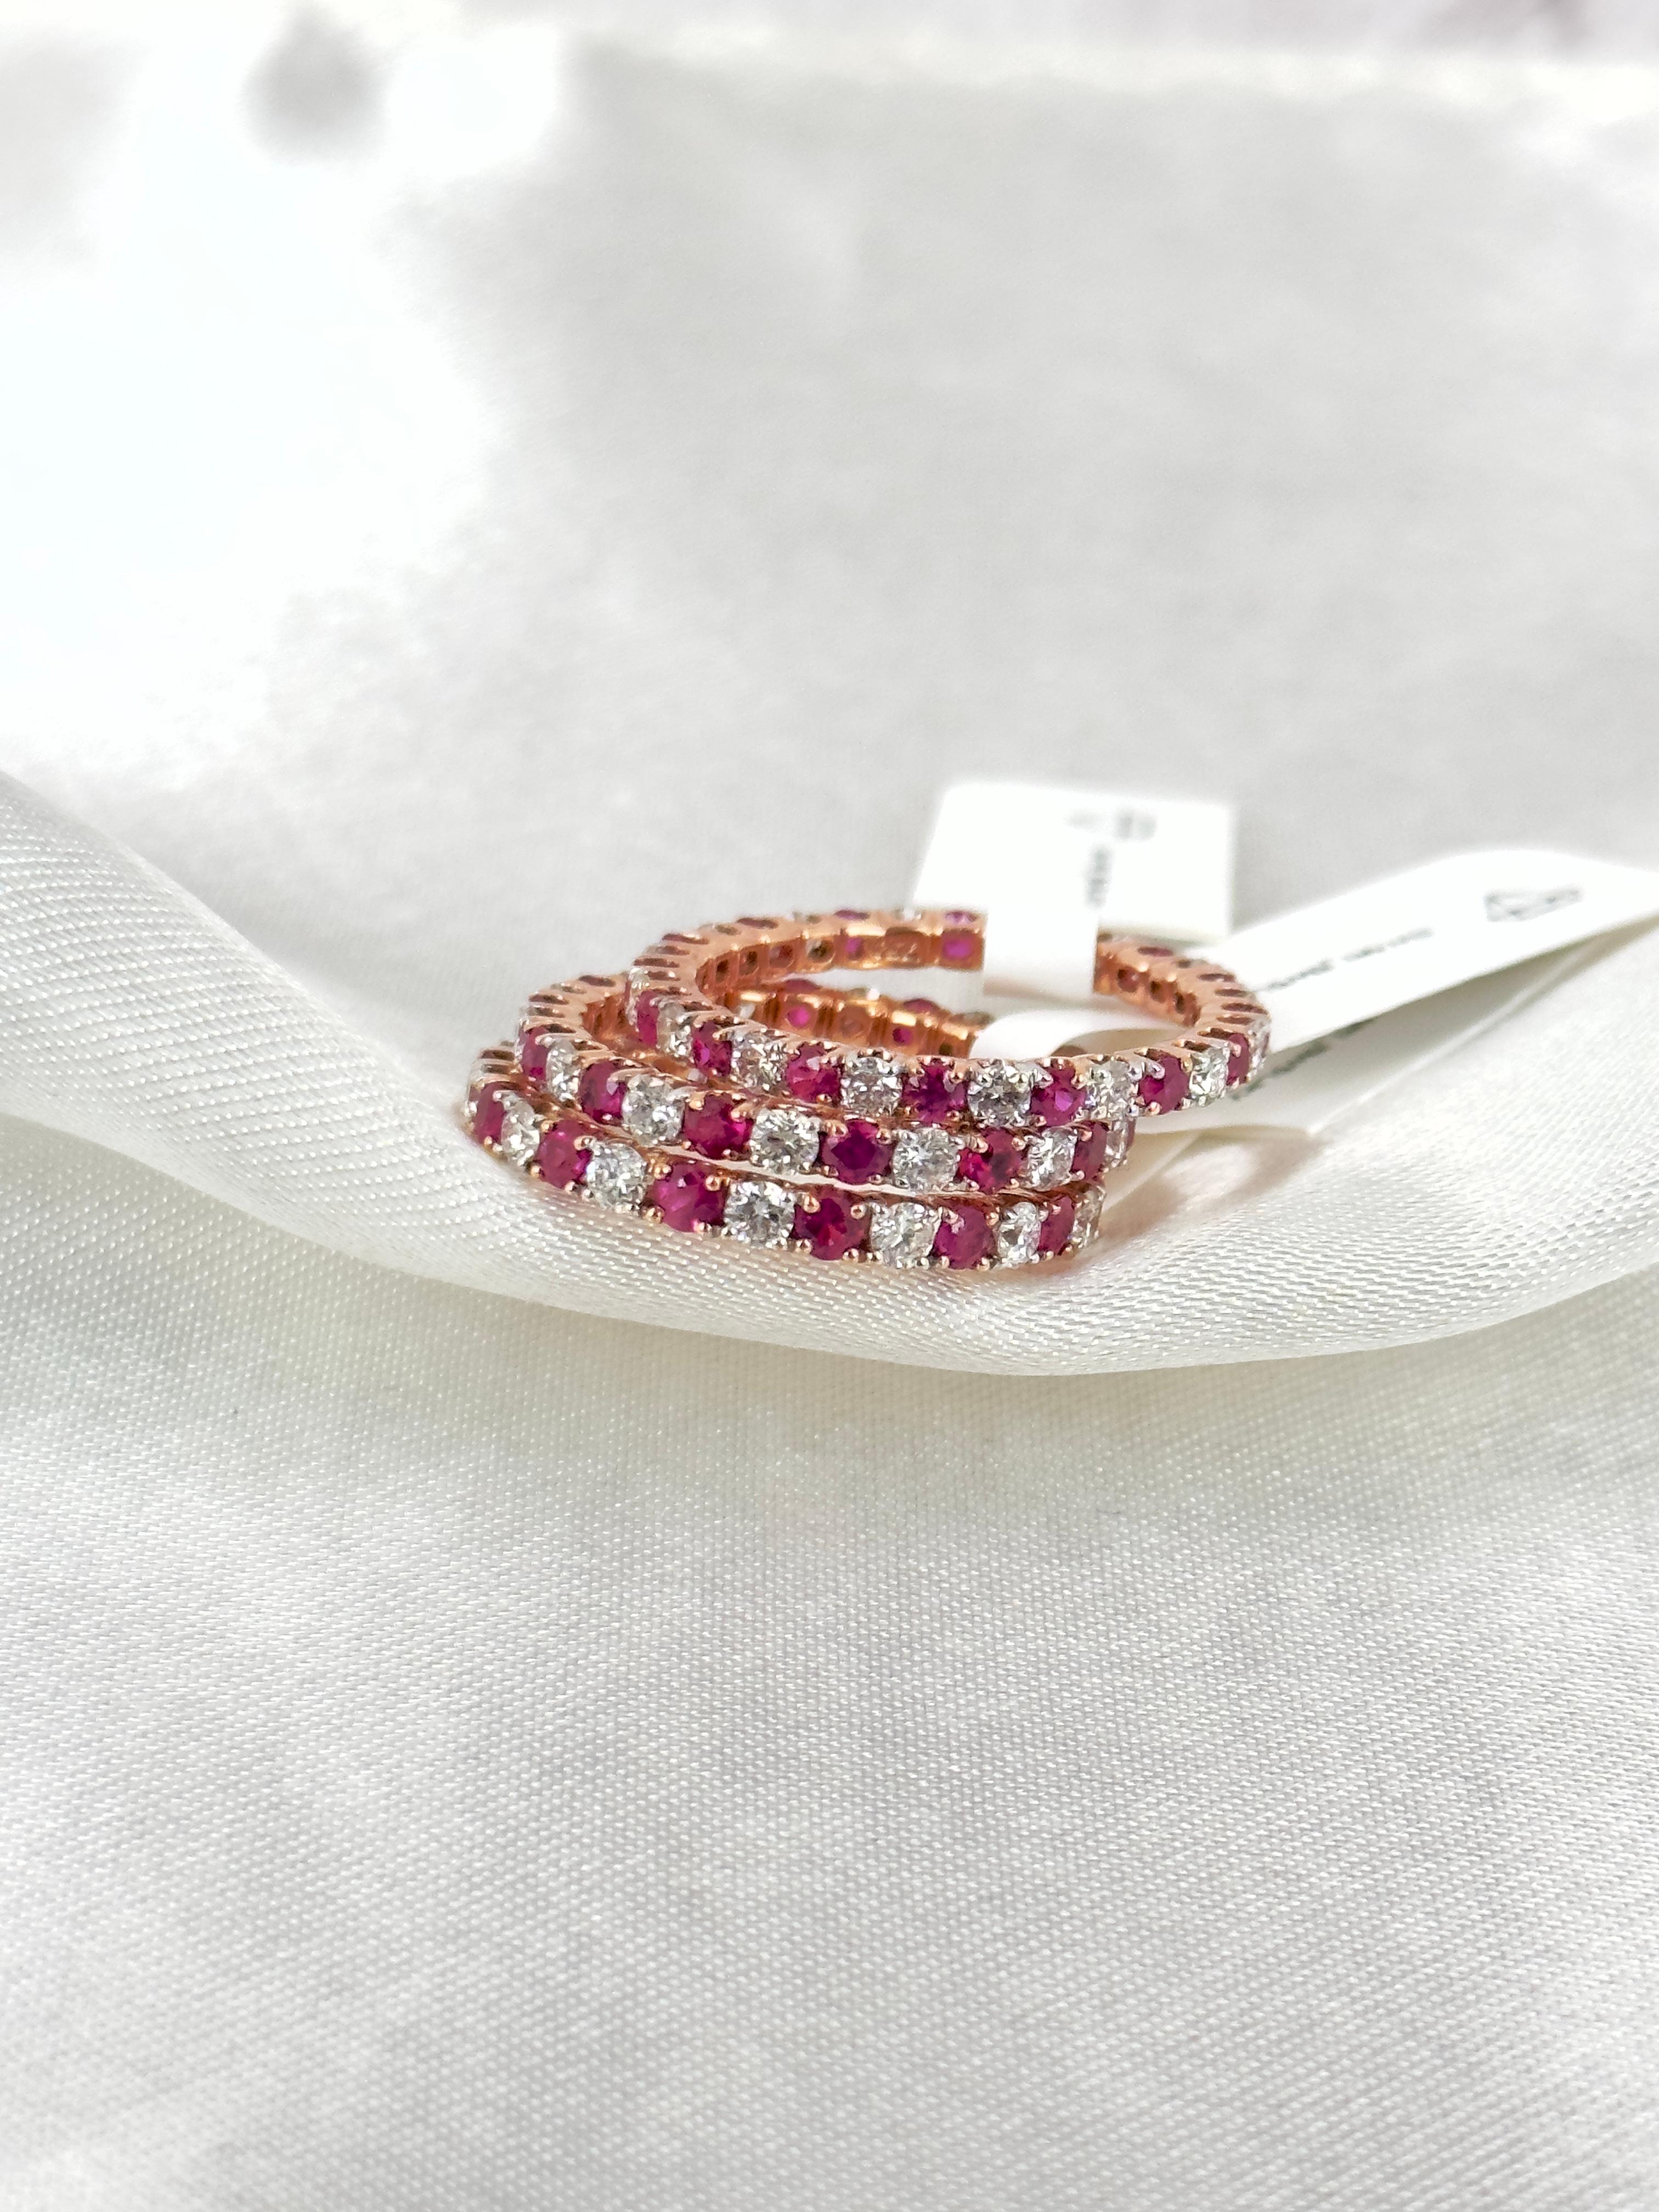 Unsere Rubin- und Diamantarmbänder für die Ewigkeit ergänzen die alternierende Kollektion! Warum nur ein Design, wenn man auch beides haben kann! Natürliche Rubine und Diamanten, gefasst in massivem Roségold, werden Sie überraschen. Der Glanz, der